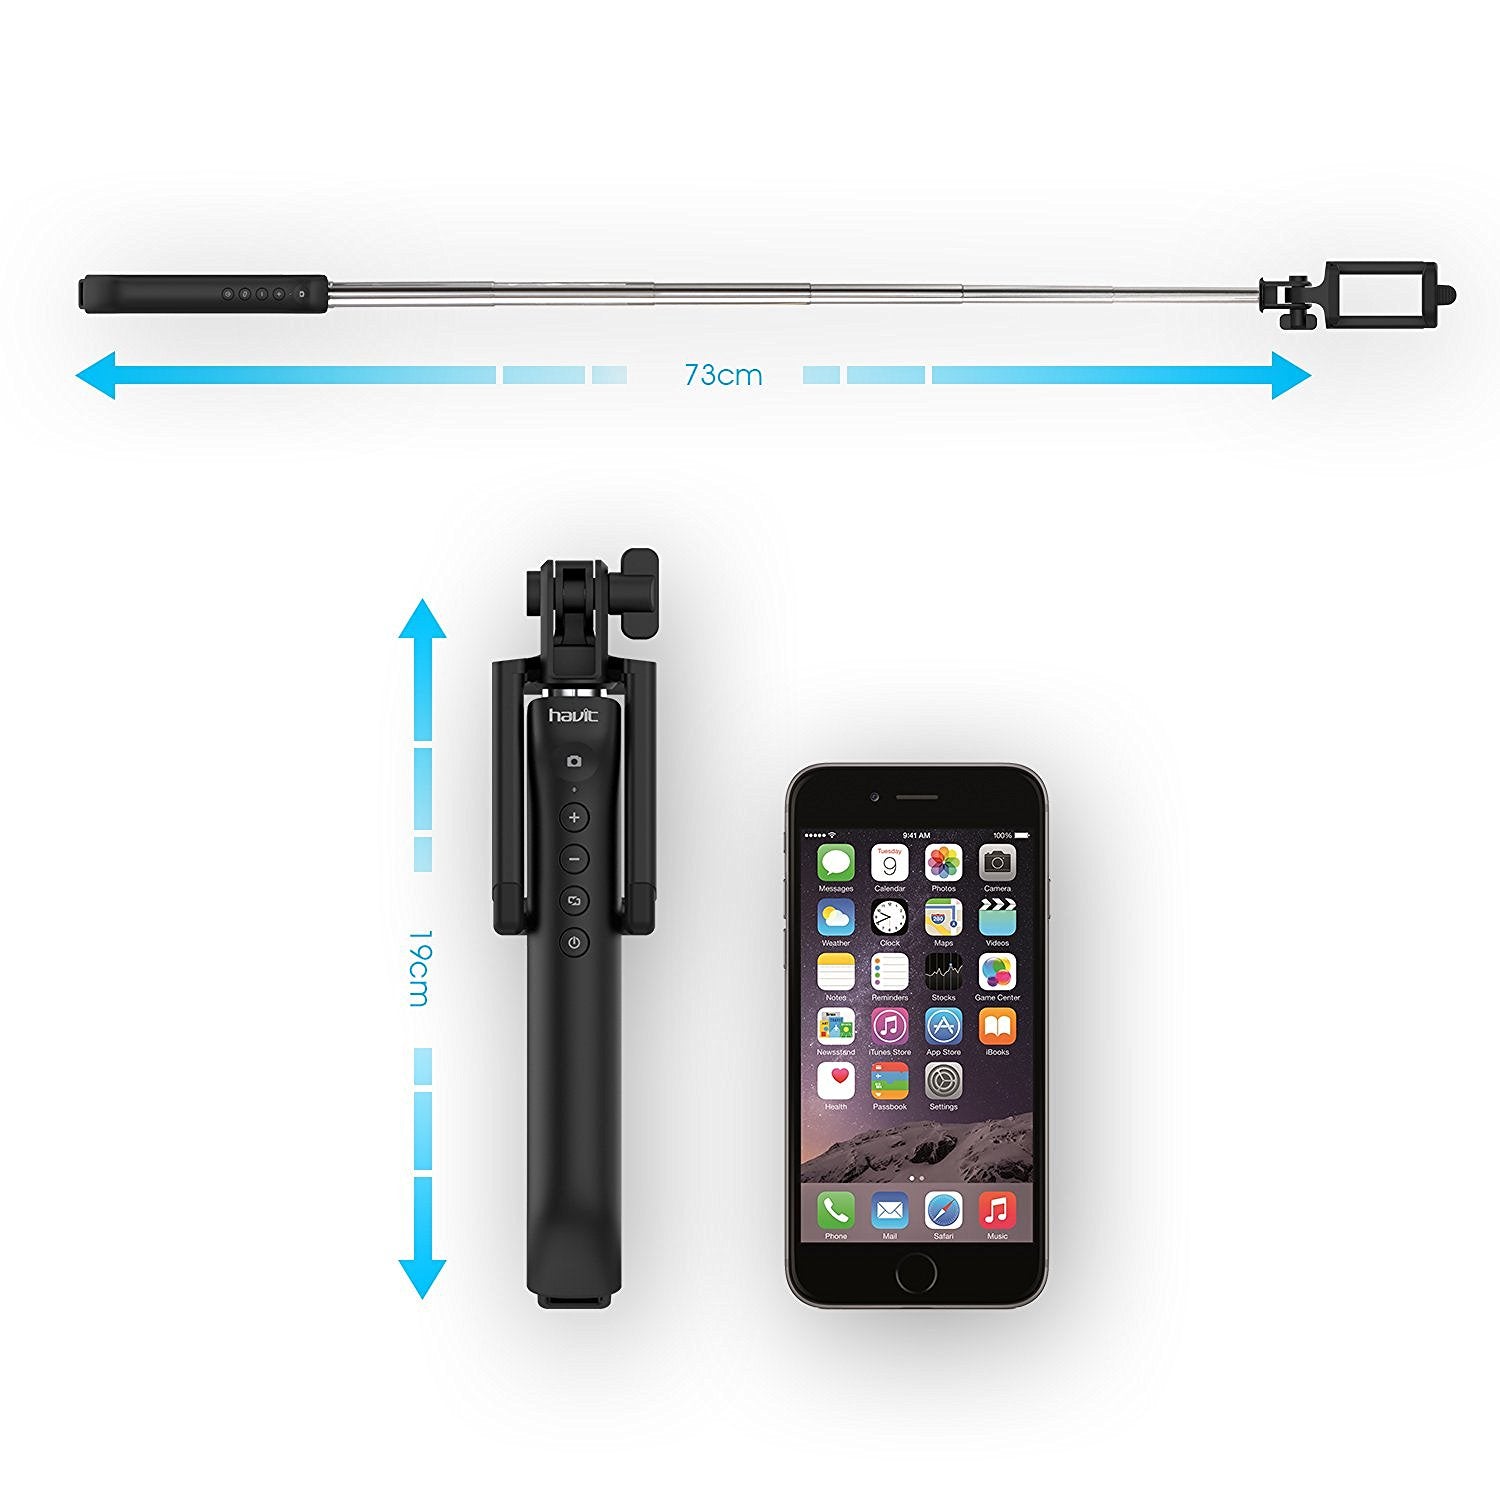 HAVIT HV-BTM27 Bluetooth Remote Shutter Selfie Stick